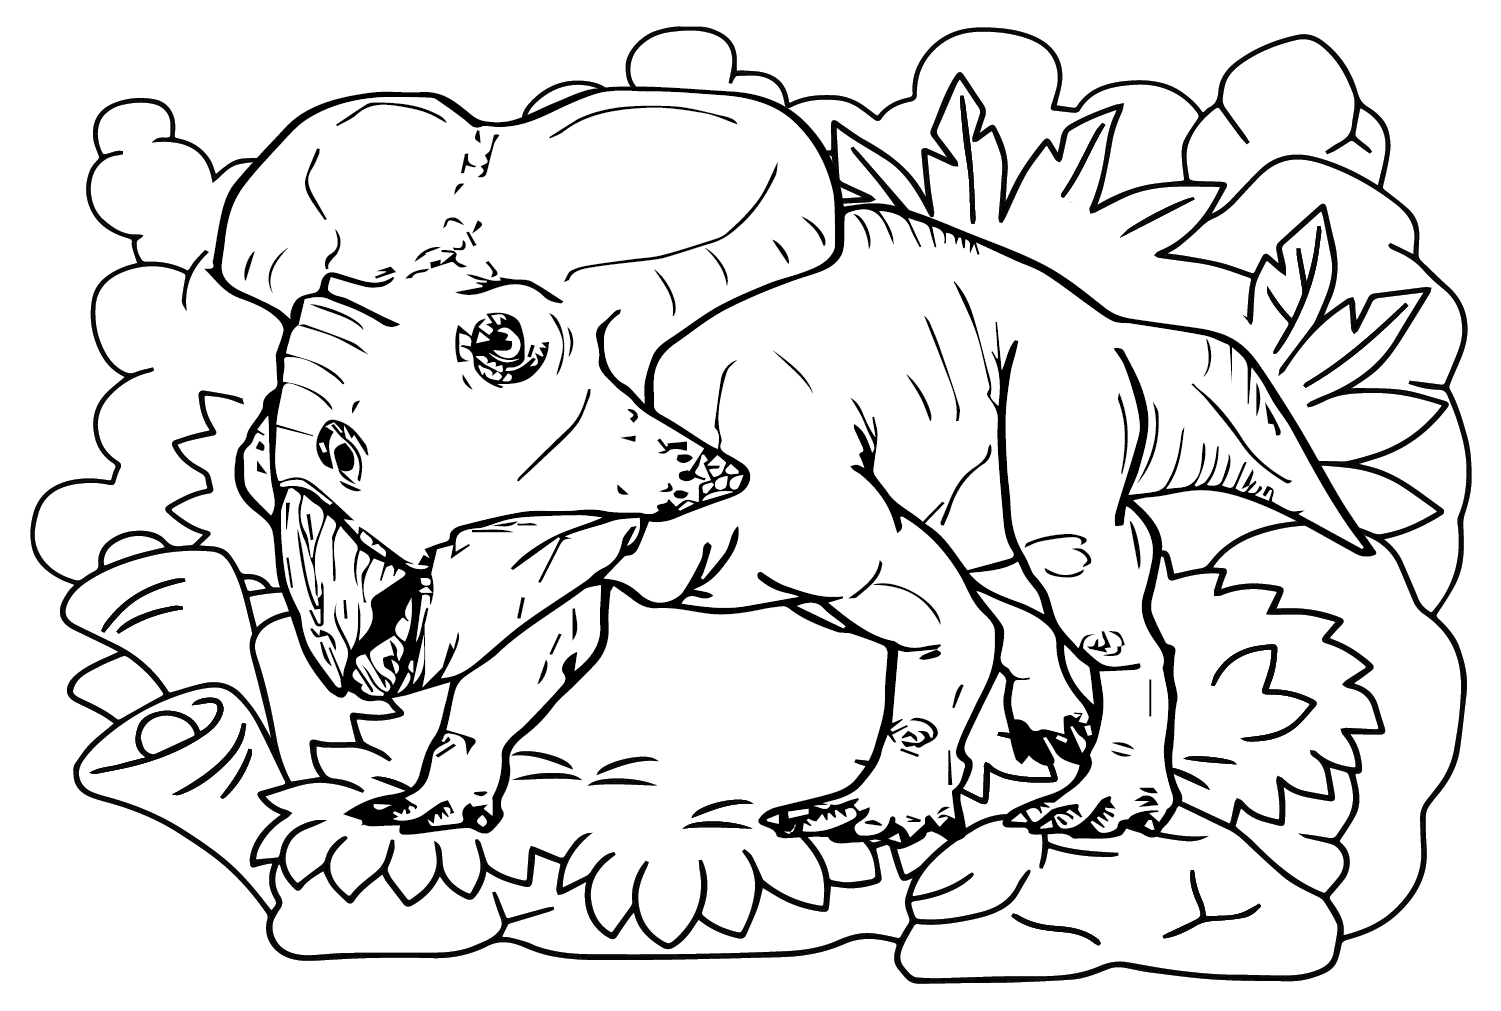 Protoceratops-Zeichnungs-Malvorlage von Protoceratops